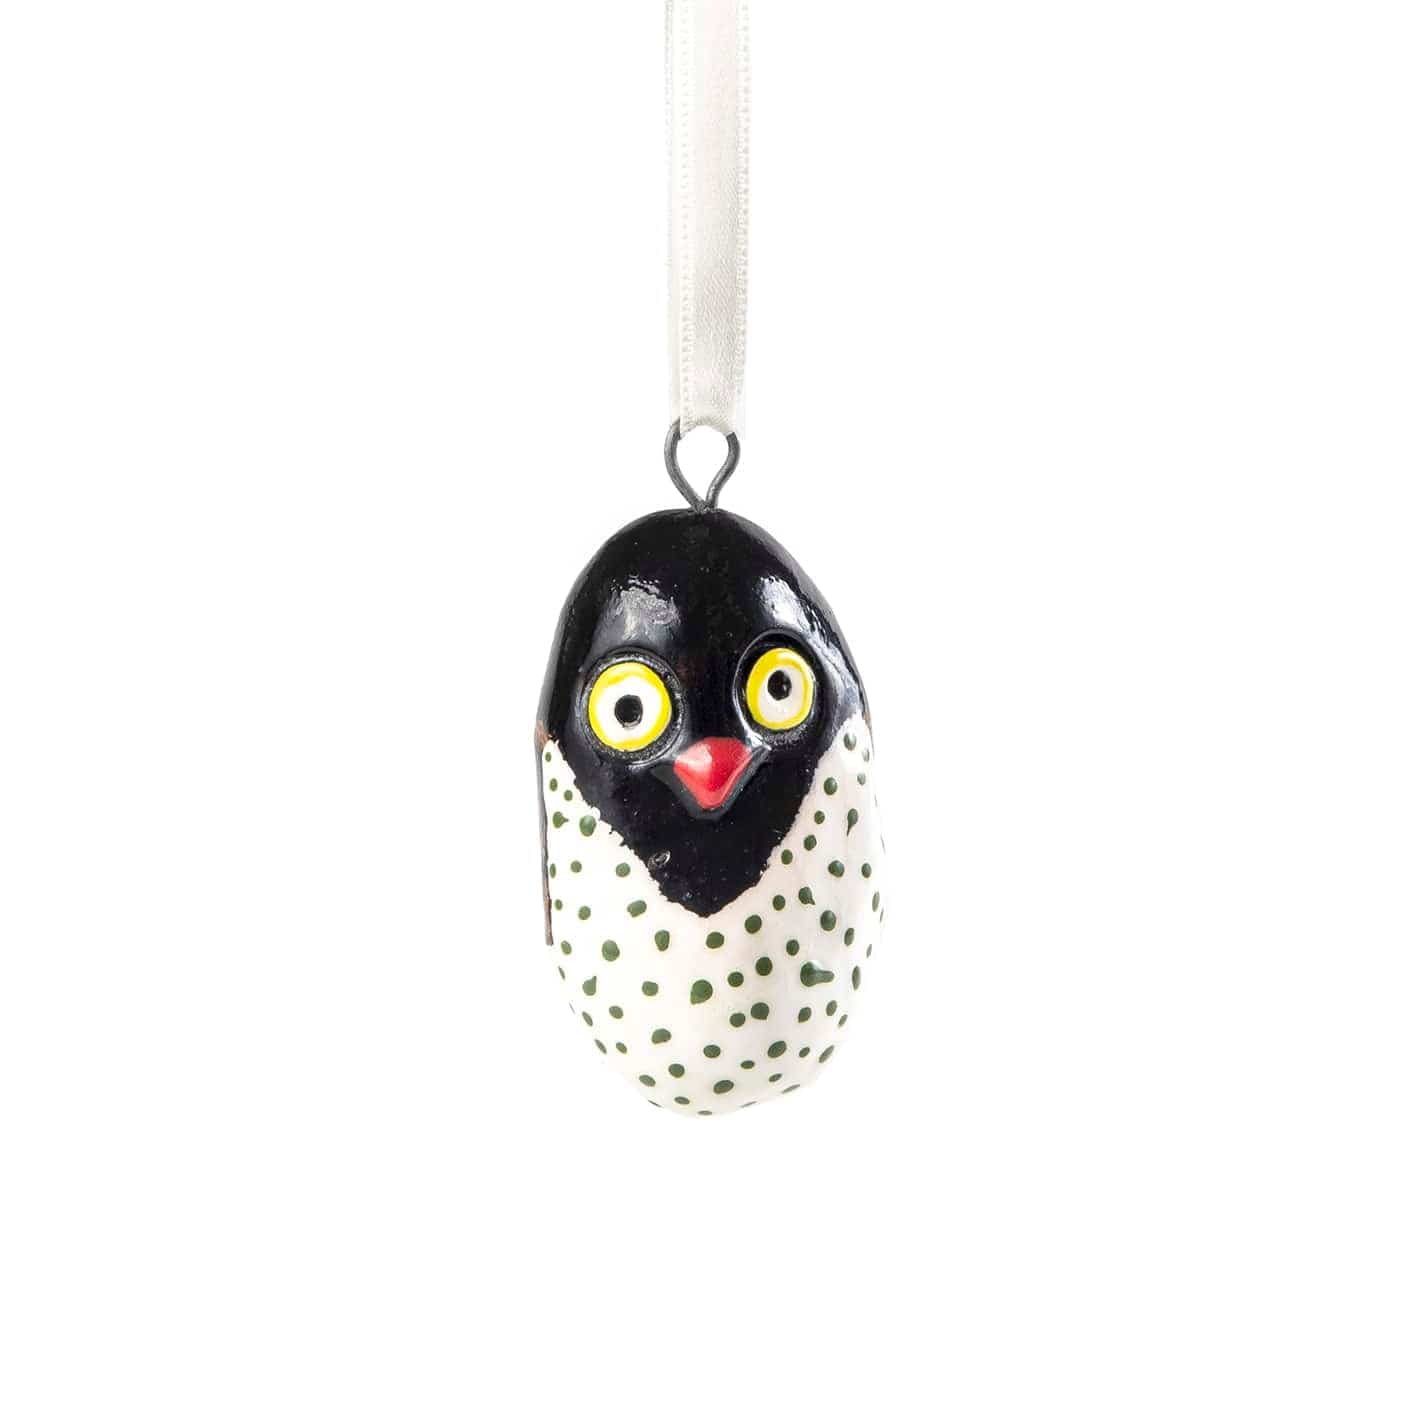 Mifuko Jacaranda wood Ornament Wooden ornament | 4 owls ornament set